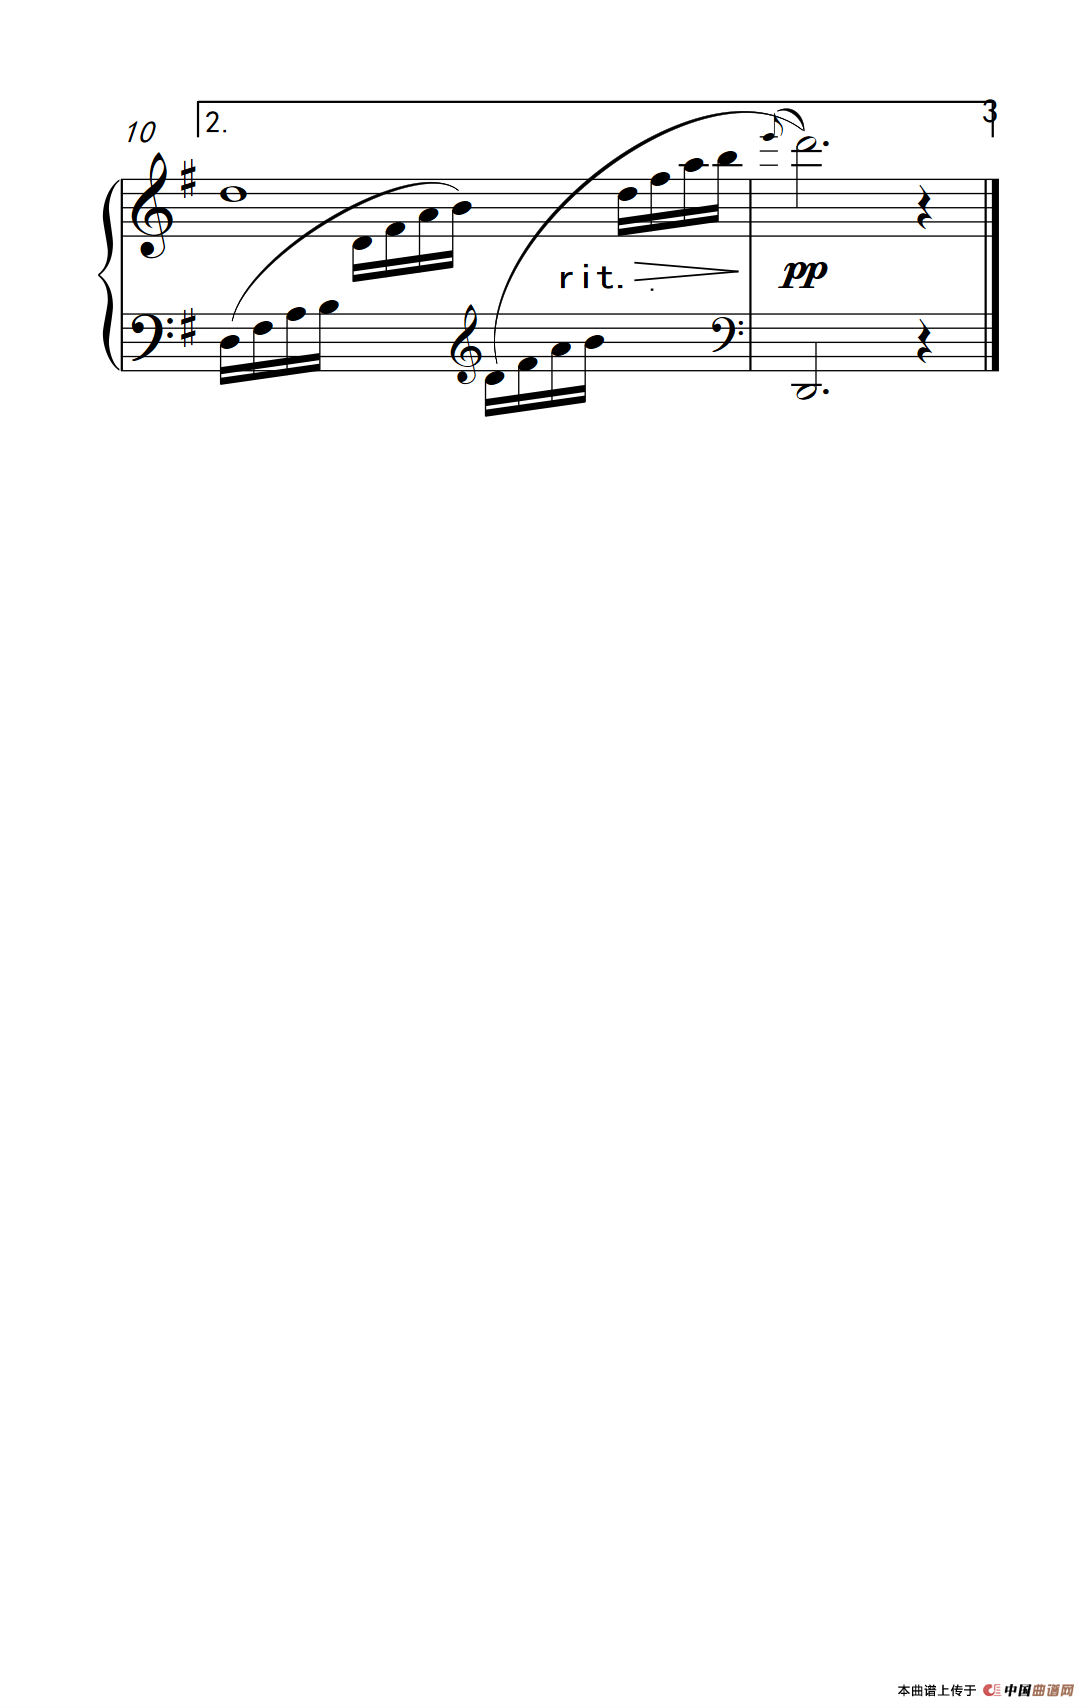 《梁祝》主题曲（约翰·汤普森 成人钢琴教程 第二册）(1)_原文件名：239_46_3.png